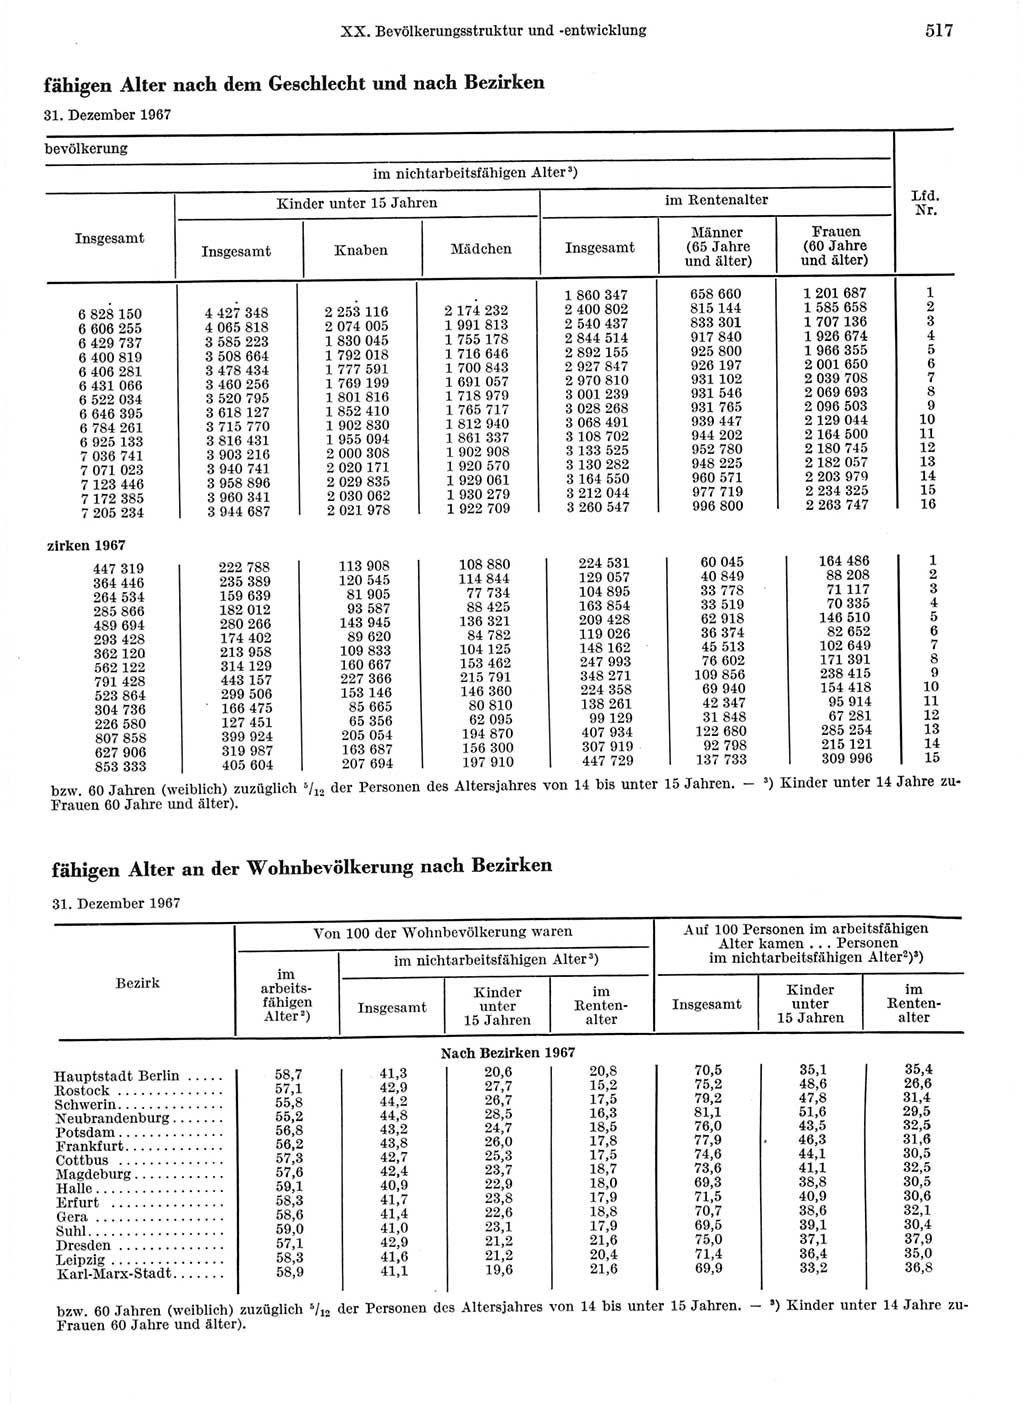 Statistisches Jahrbuch der Deutschen Demokratischen Republik (DDR) 1968, Seite 517 (Stat. Jb. DDR 1968, S. 517)